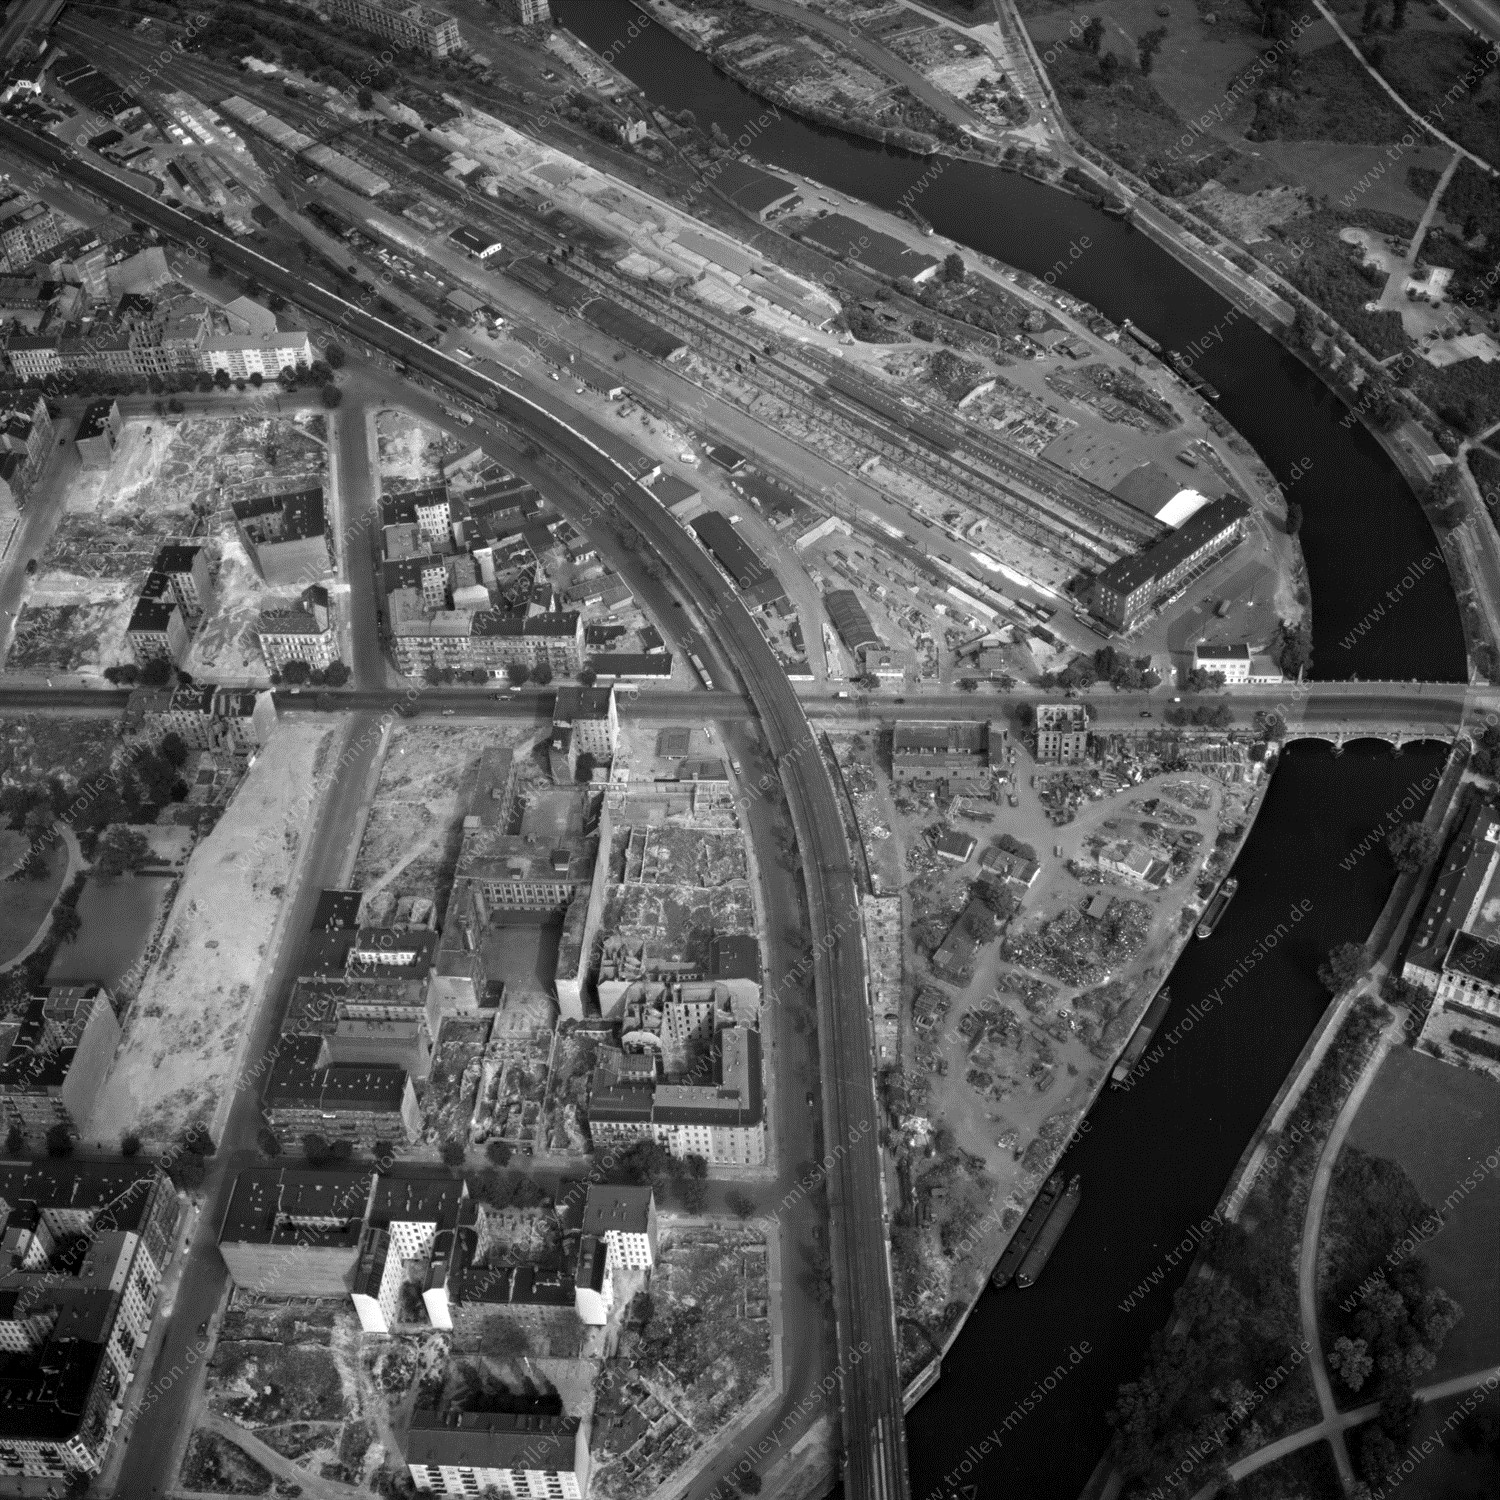 Alte Fotos und Luftbilder von Berlin - Luftbildaufnahme Nr. 08 - Historische Luftaufnahmen von West-Berlin aus dem Jahr 1954 - Flugstrecke Whiskey